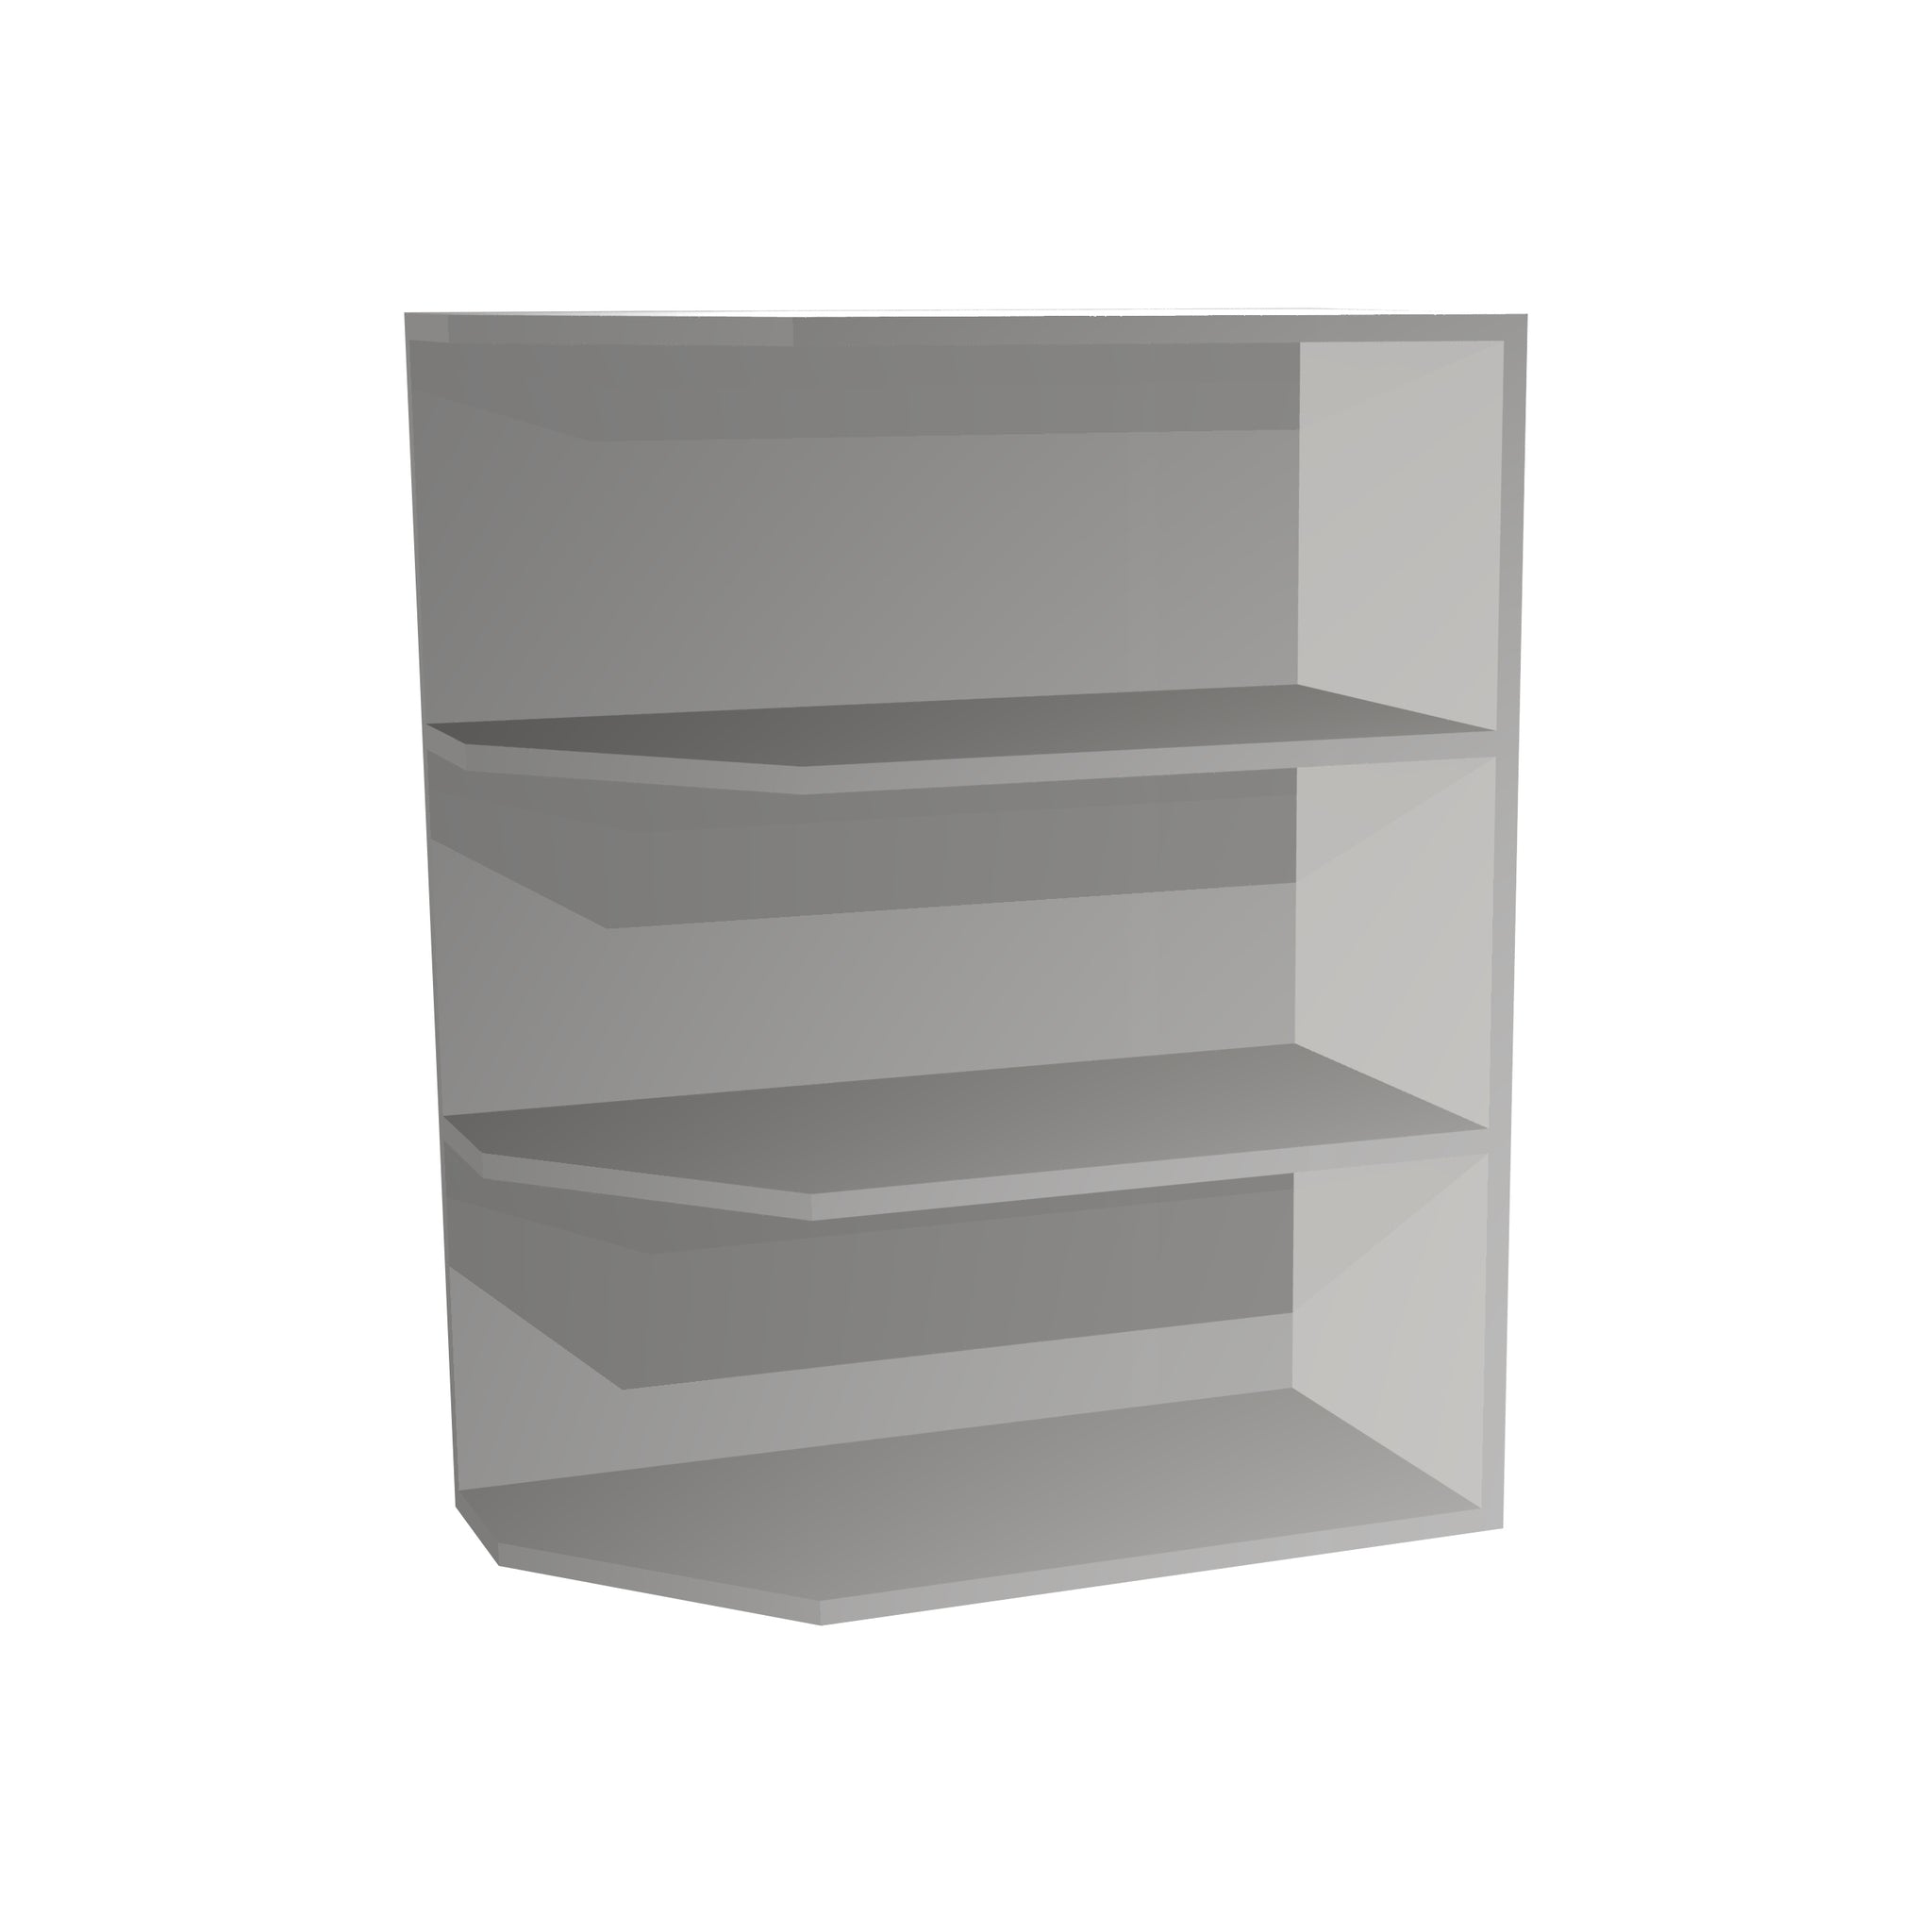 RTA - Glossy White - Base End Shelf Cabinet | 12"W x 34.5"H x 24"D